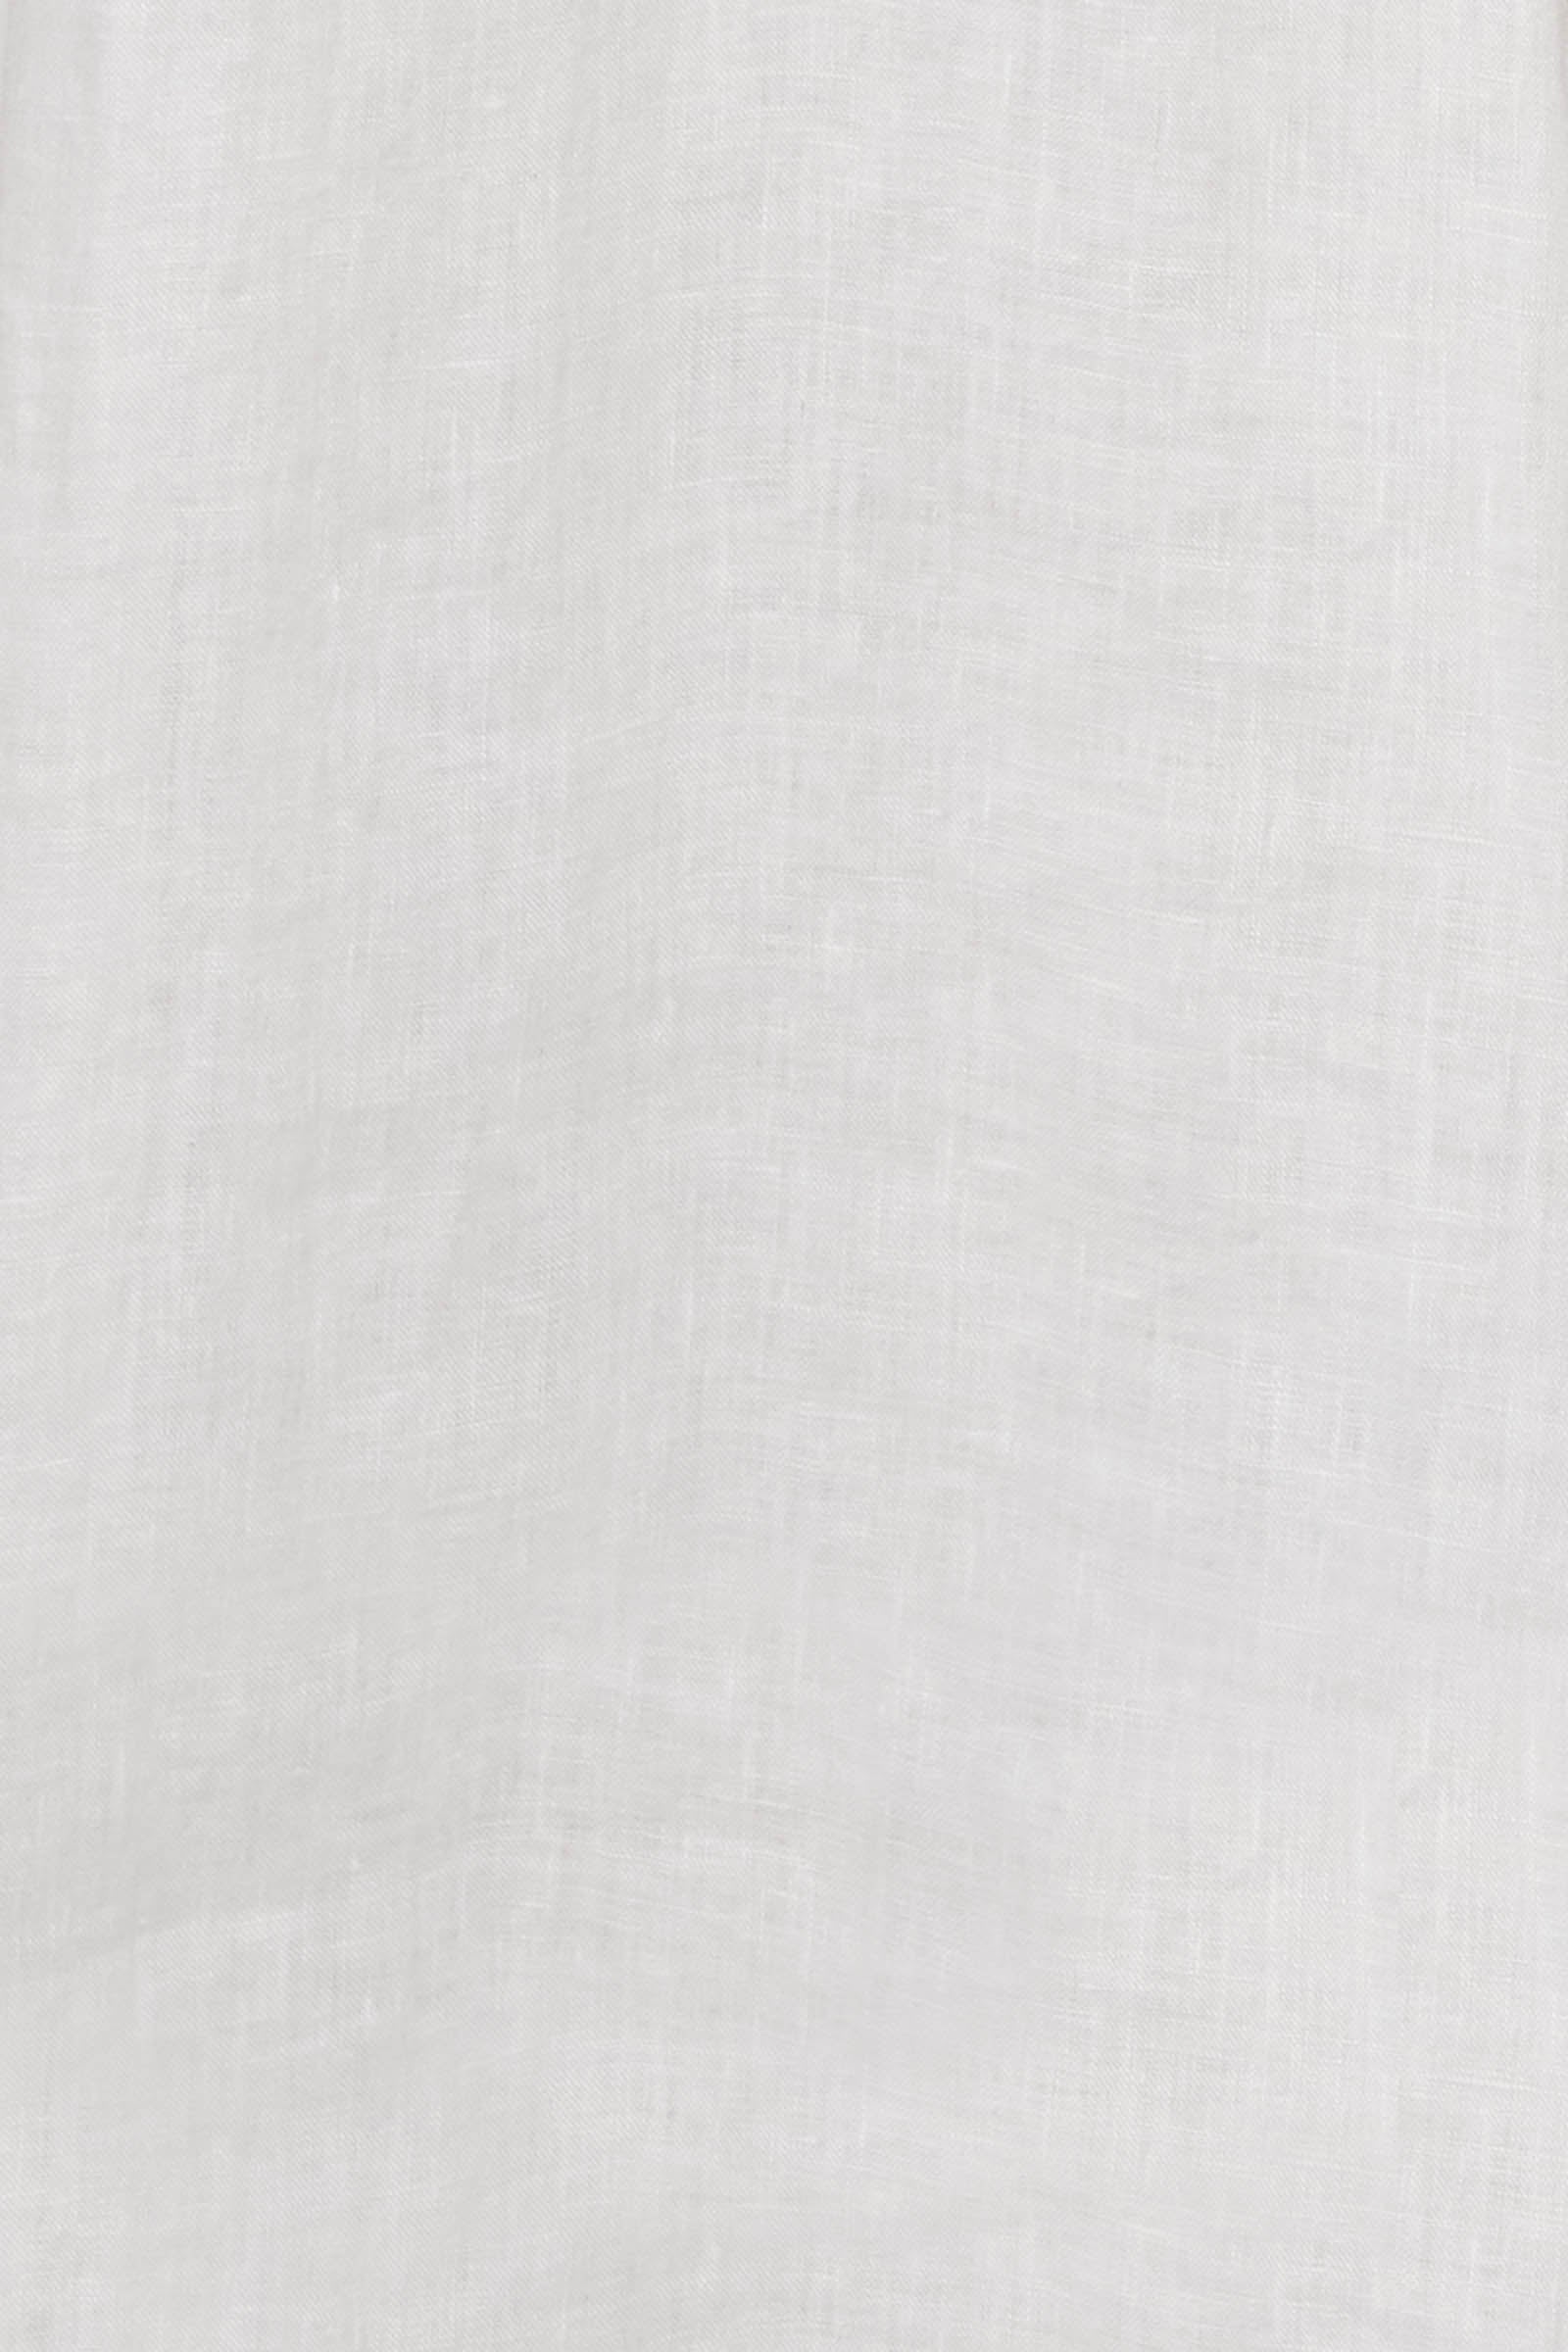 La Vie Tank - Blanc - eb&ive Clothing - Top Strappy Linen